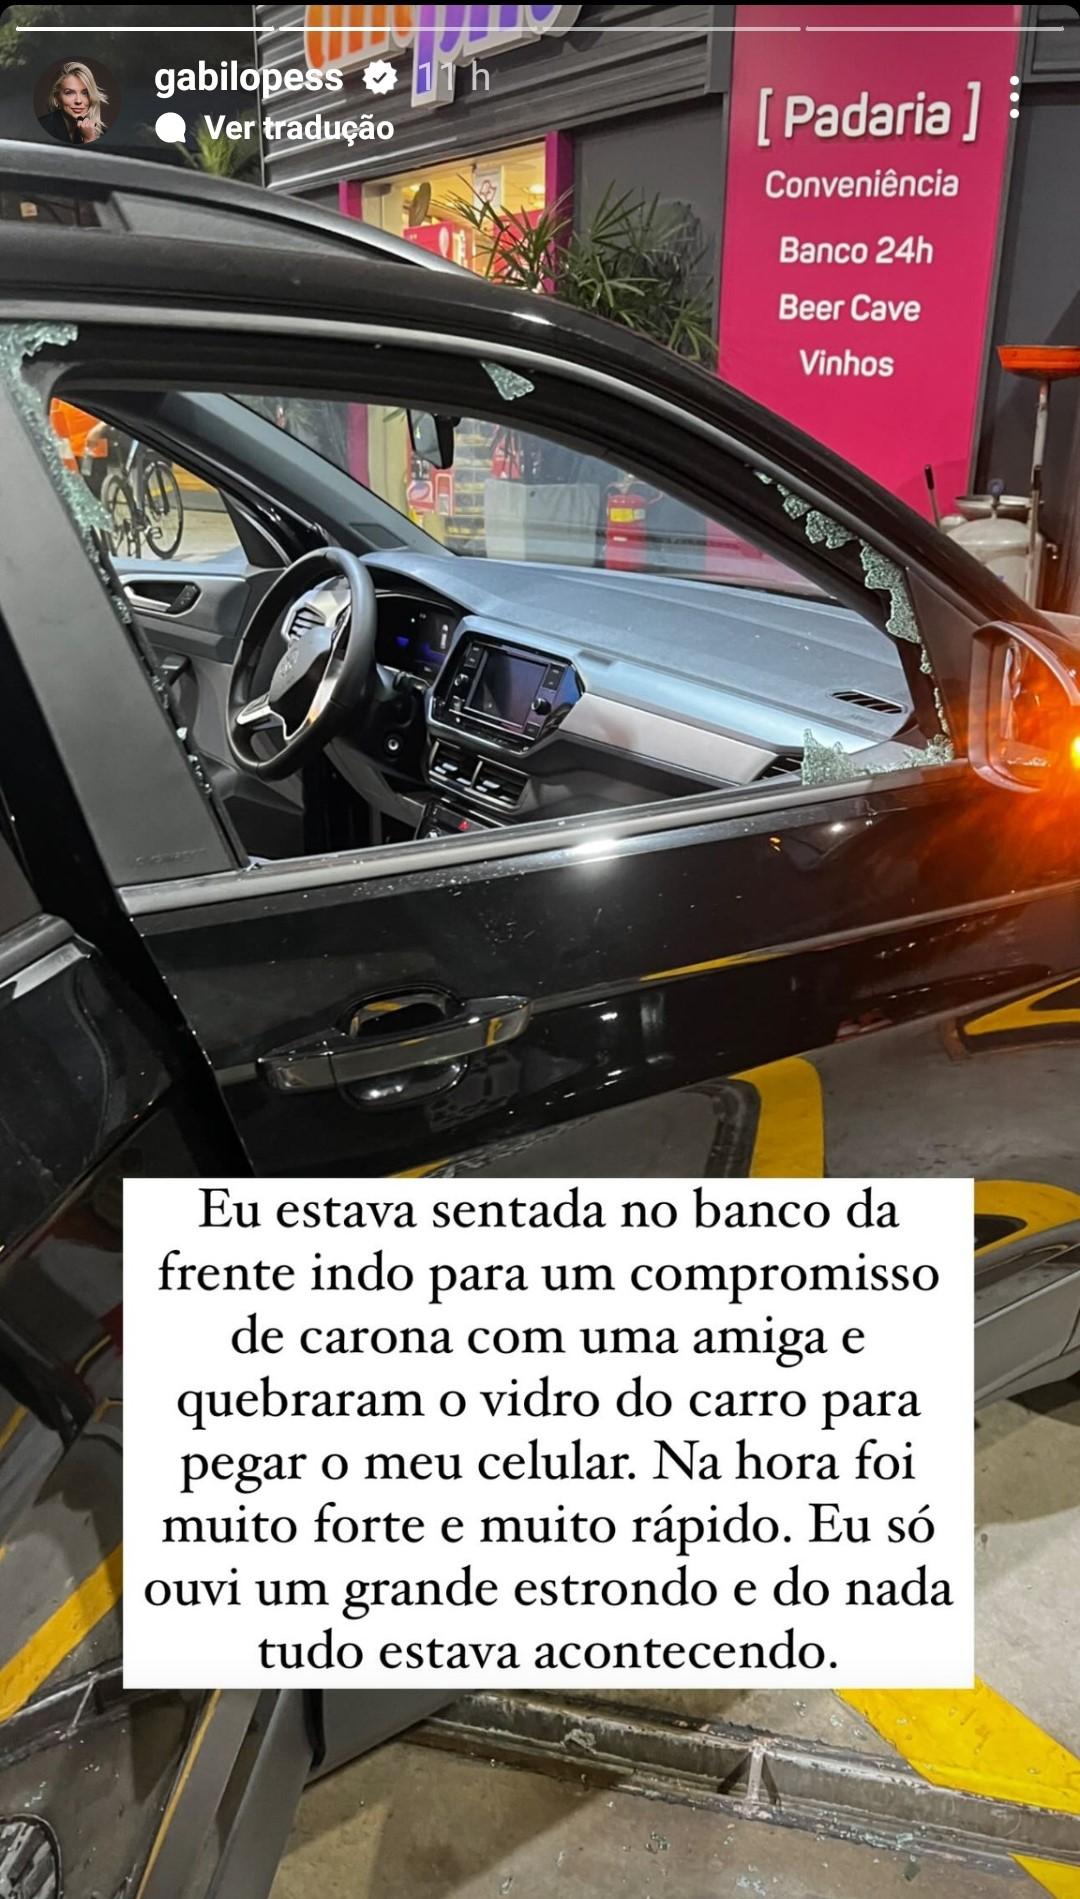 Story de Gabi Lopes sobre assalto em São Paulo